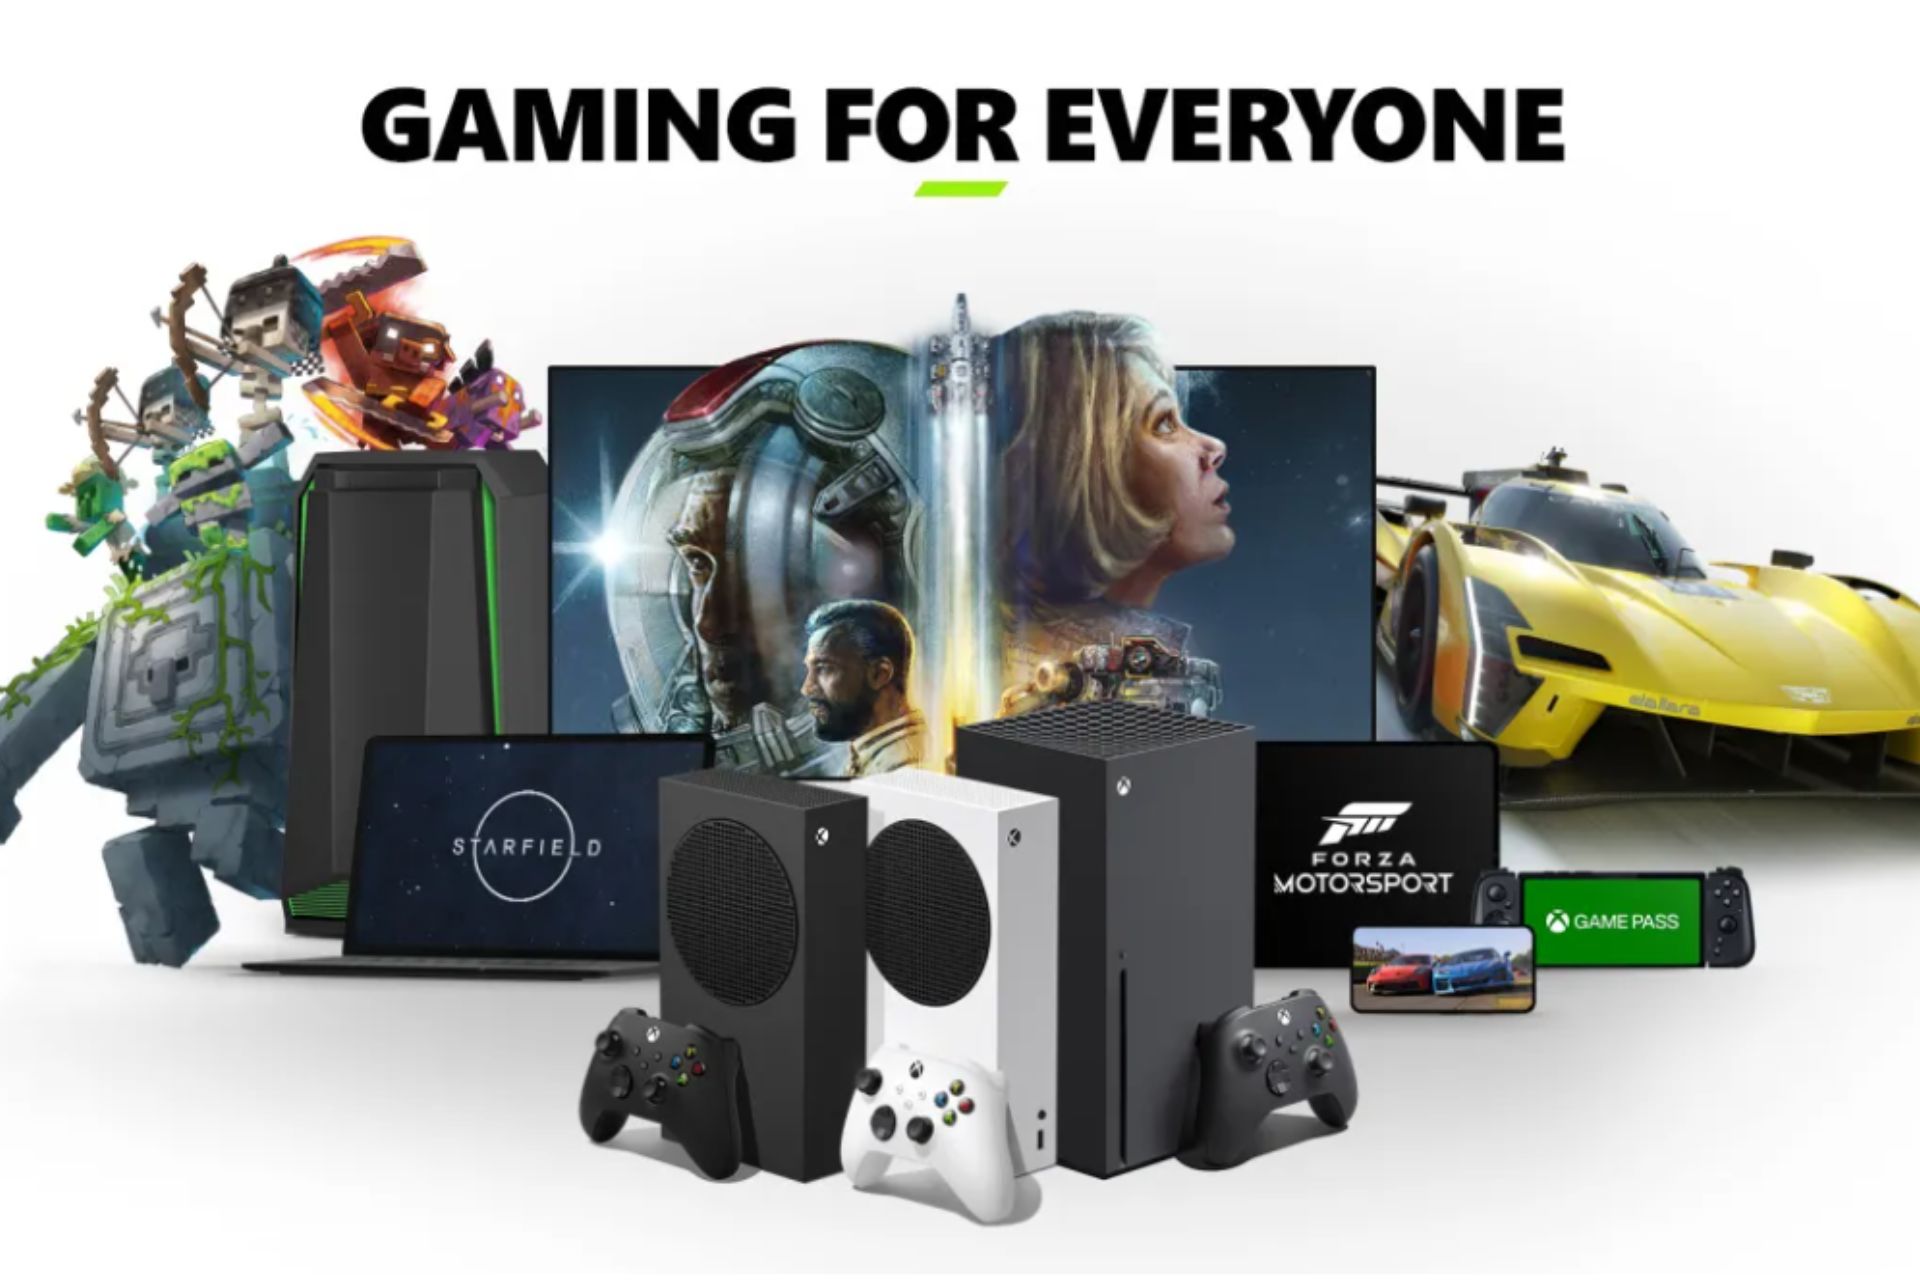 GeForce Now adiciona 18 jogos em seu catálogo. Assinatura Ultimate dá  acesso a PC Game Pass